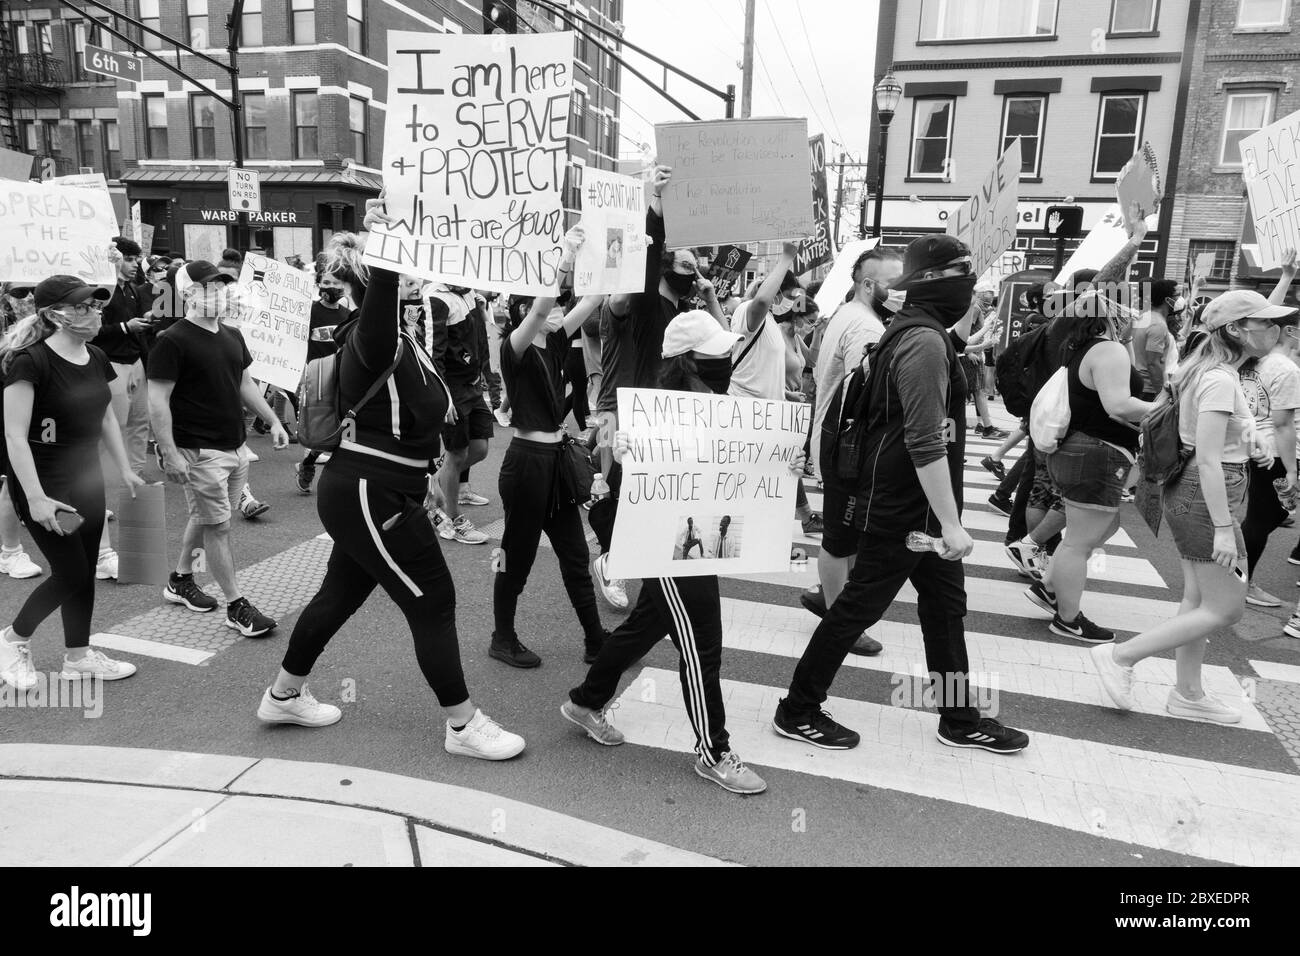 Hoboken, NJ / USA - 5 juin 2020: Black Lives Matter des manifestations pacifiques à Hoboken, New Jersey pour défendre contre le racisme, la brutalité policière et f Banque D'Images